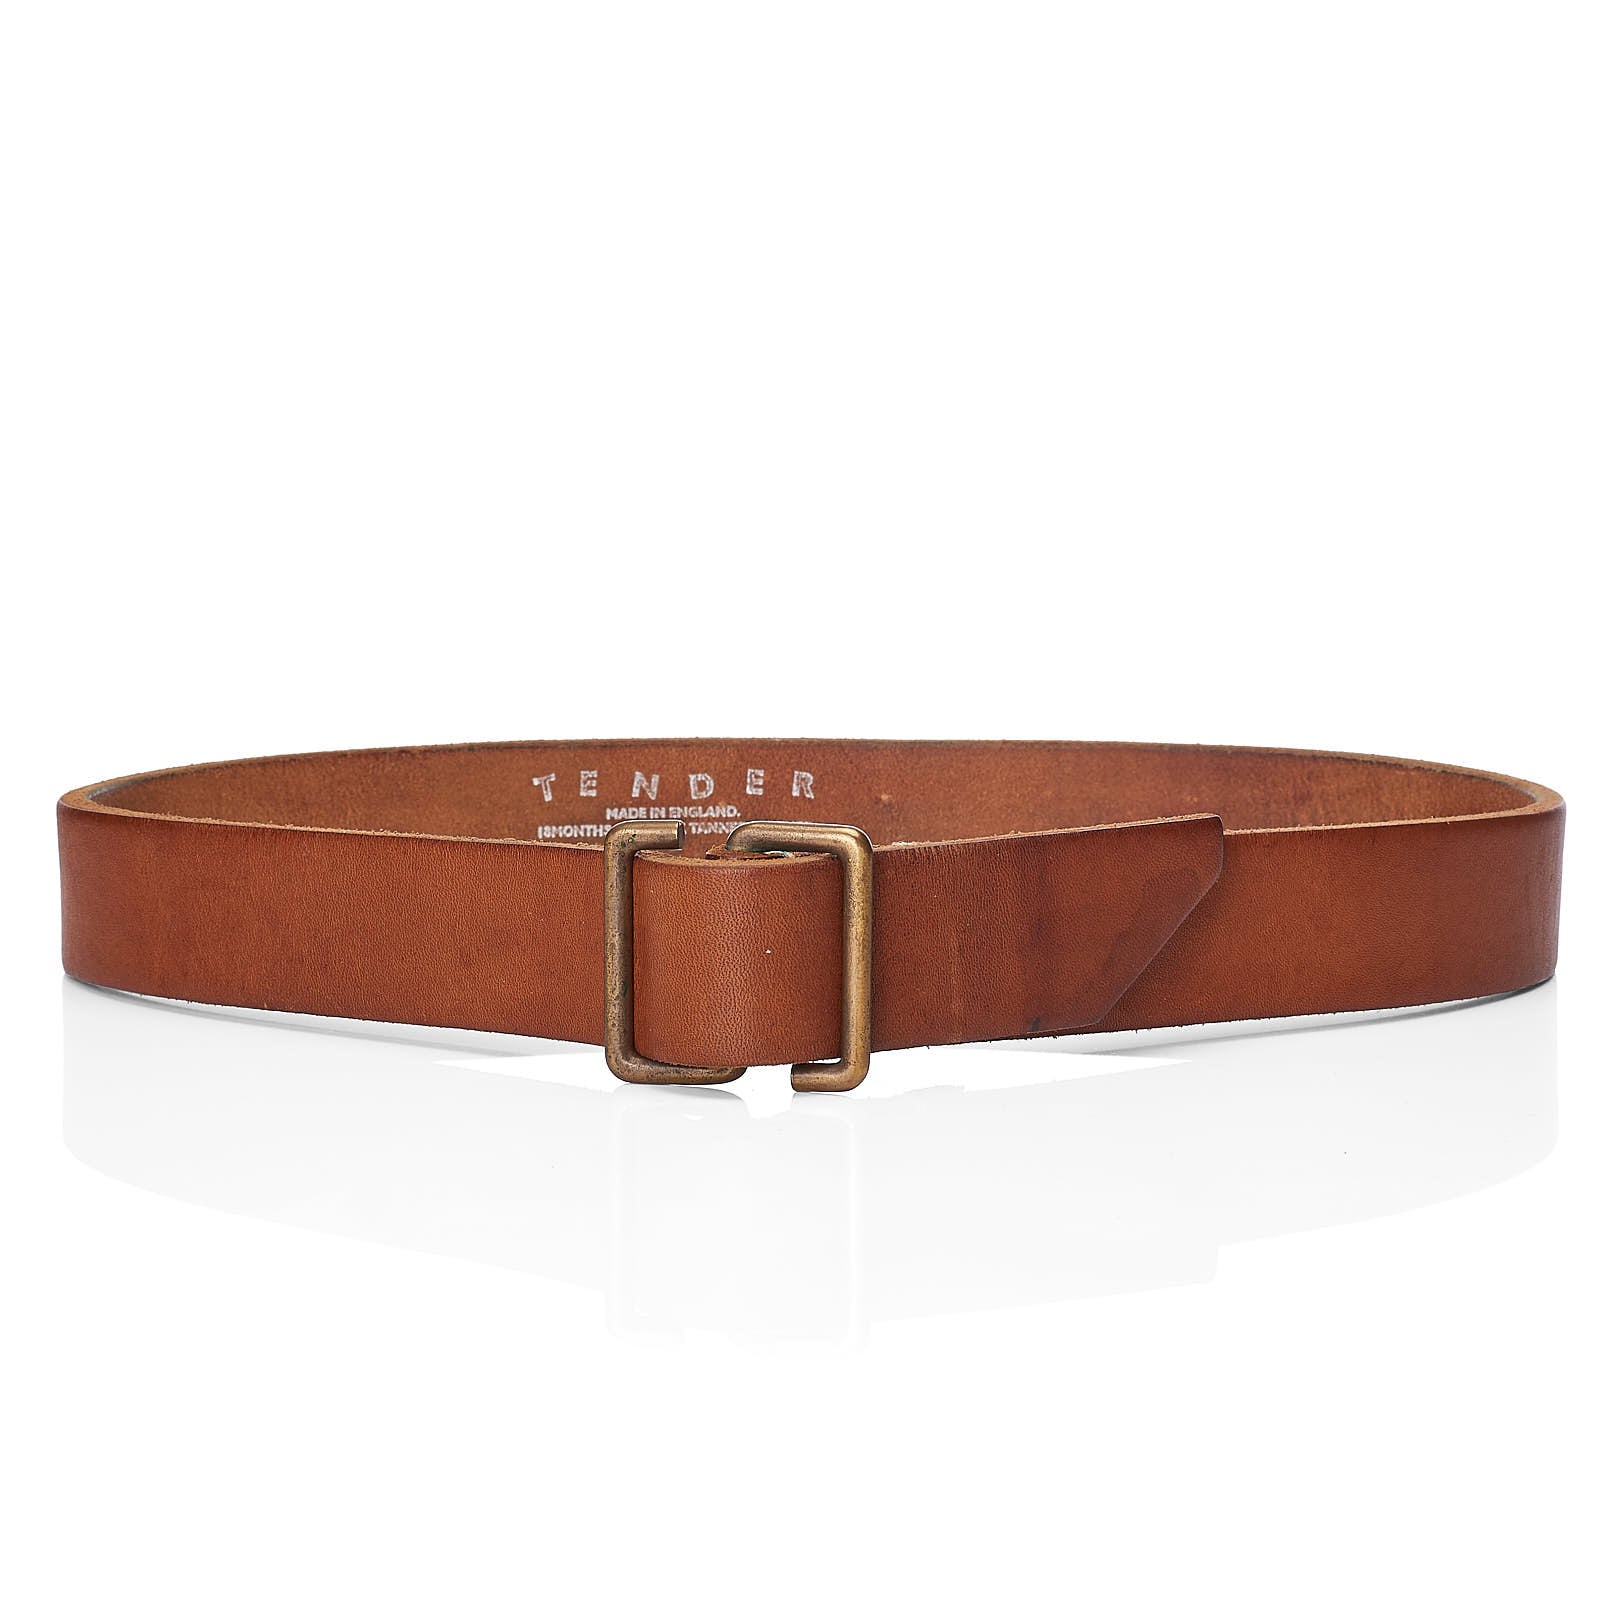 TENDER Co. S-Buckle Oak Bark Tanned Leather Belt Size 4 34"